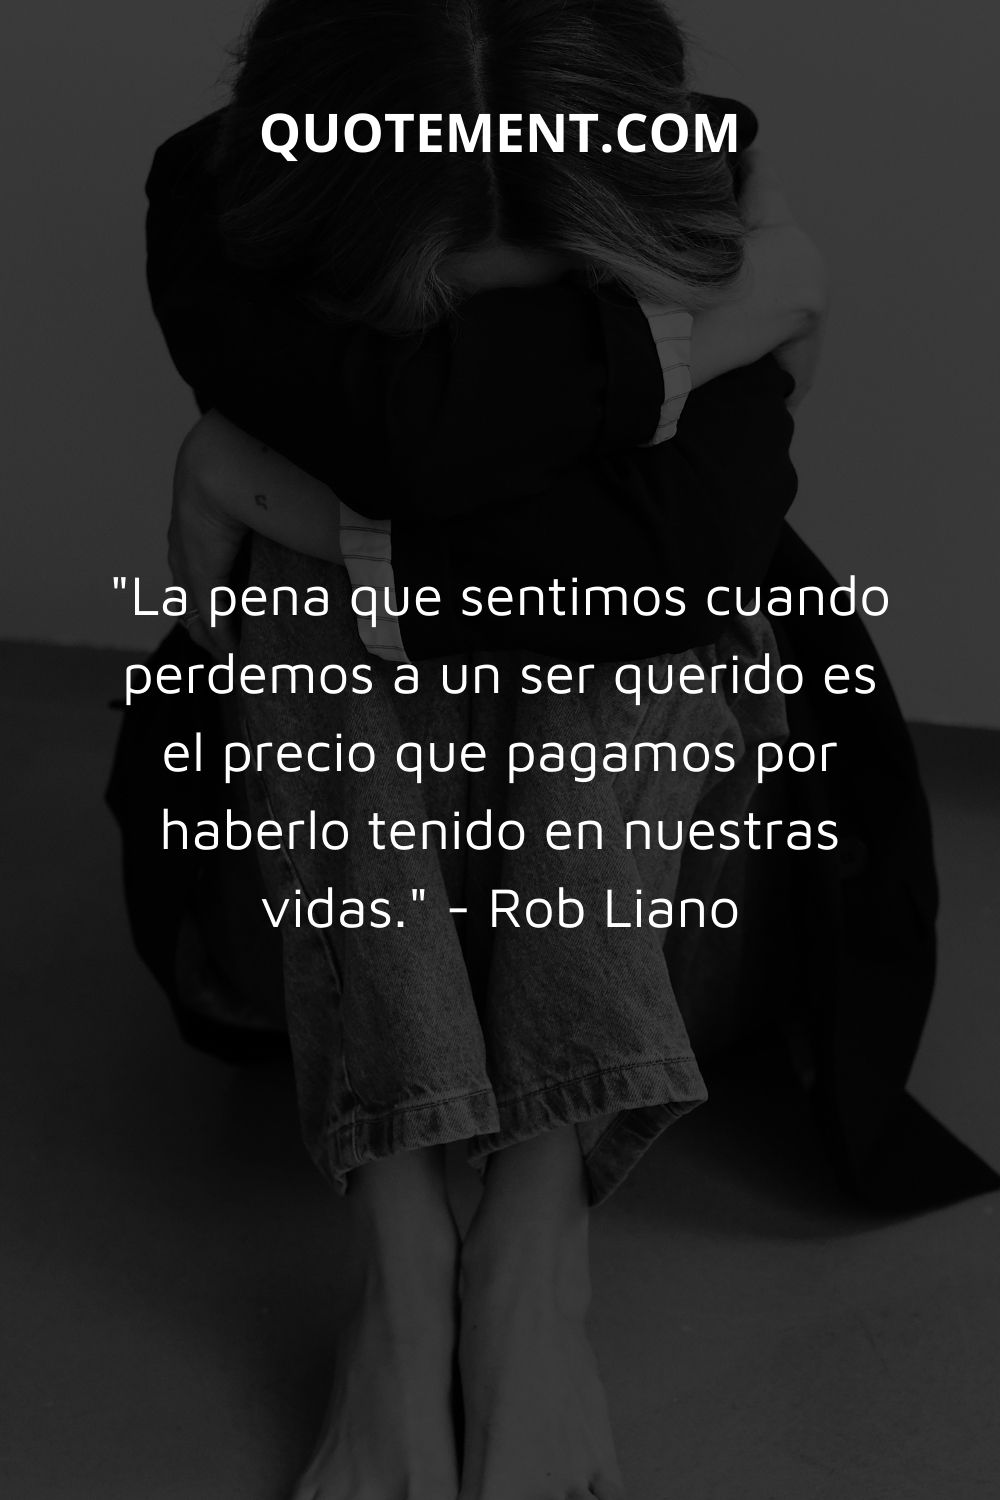 "La pena que sentimos cuando perdemos a un ser querido es el precio que pagamos por haberlo tenido en nuestras vidas". - Rob Liano